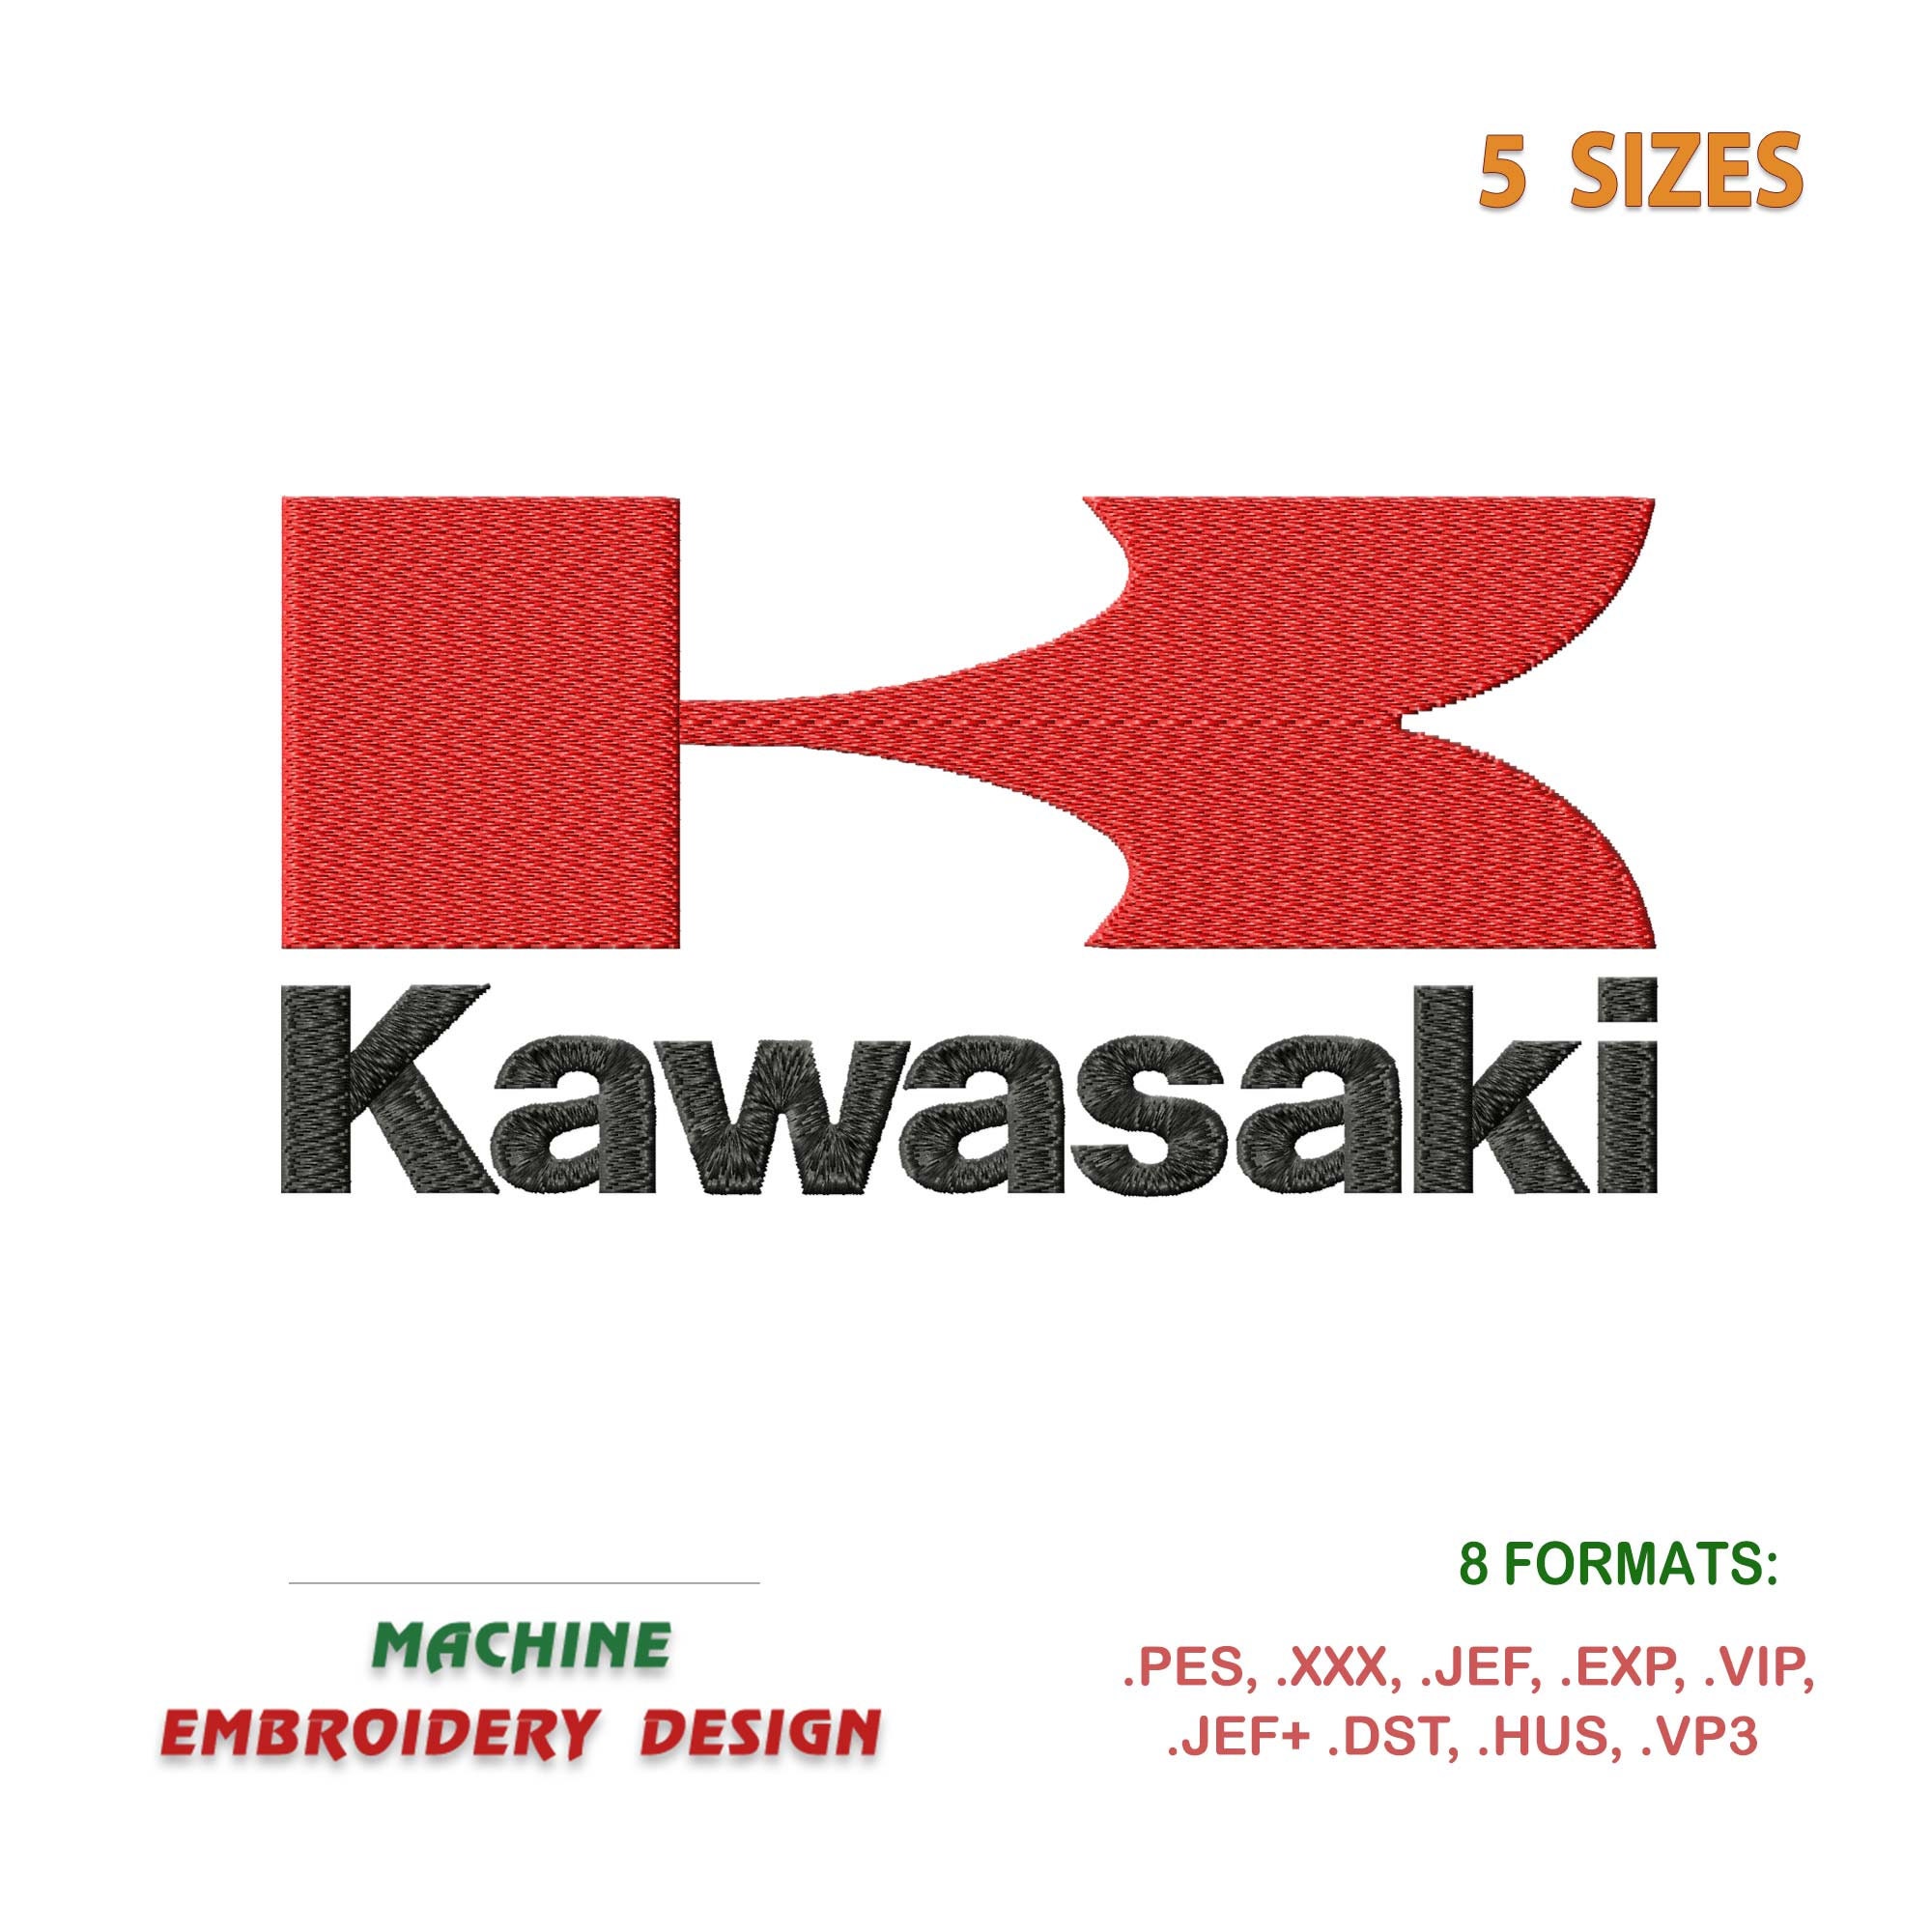 Kawasaki Logo History | Kawasaki, ? logo, Kawasaki motorcycles